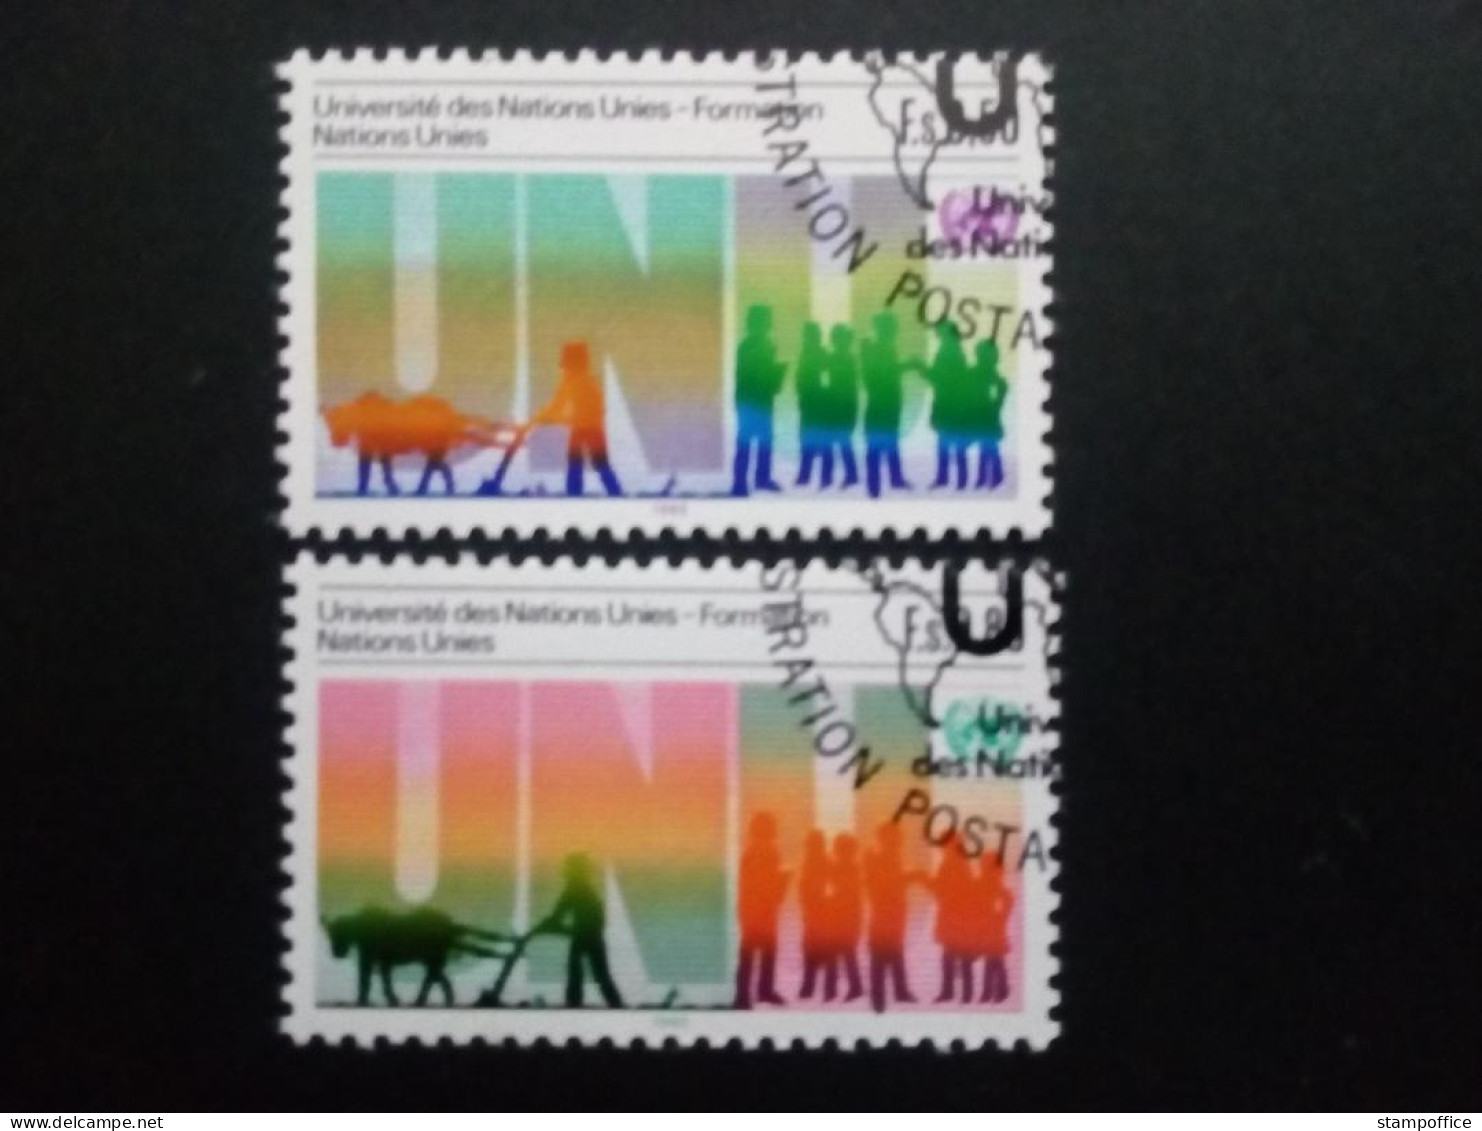 UNO GENF MI-NR. 129-130 GESTEMPELT 10 JAHRE UNIVERSITÄT DER UN IN TOKIO 1985 - Used Stamps